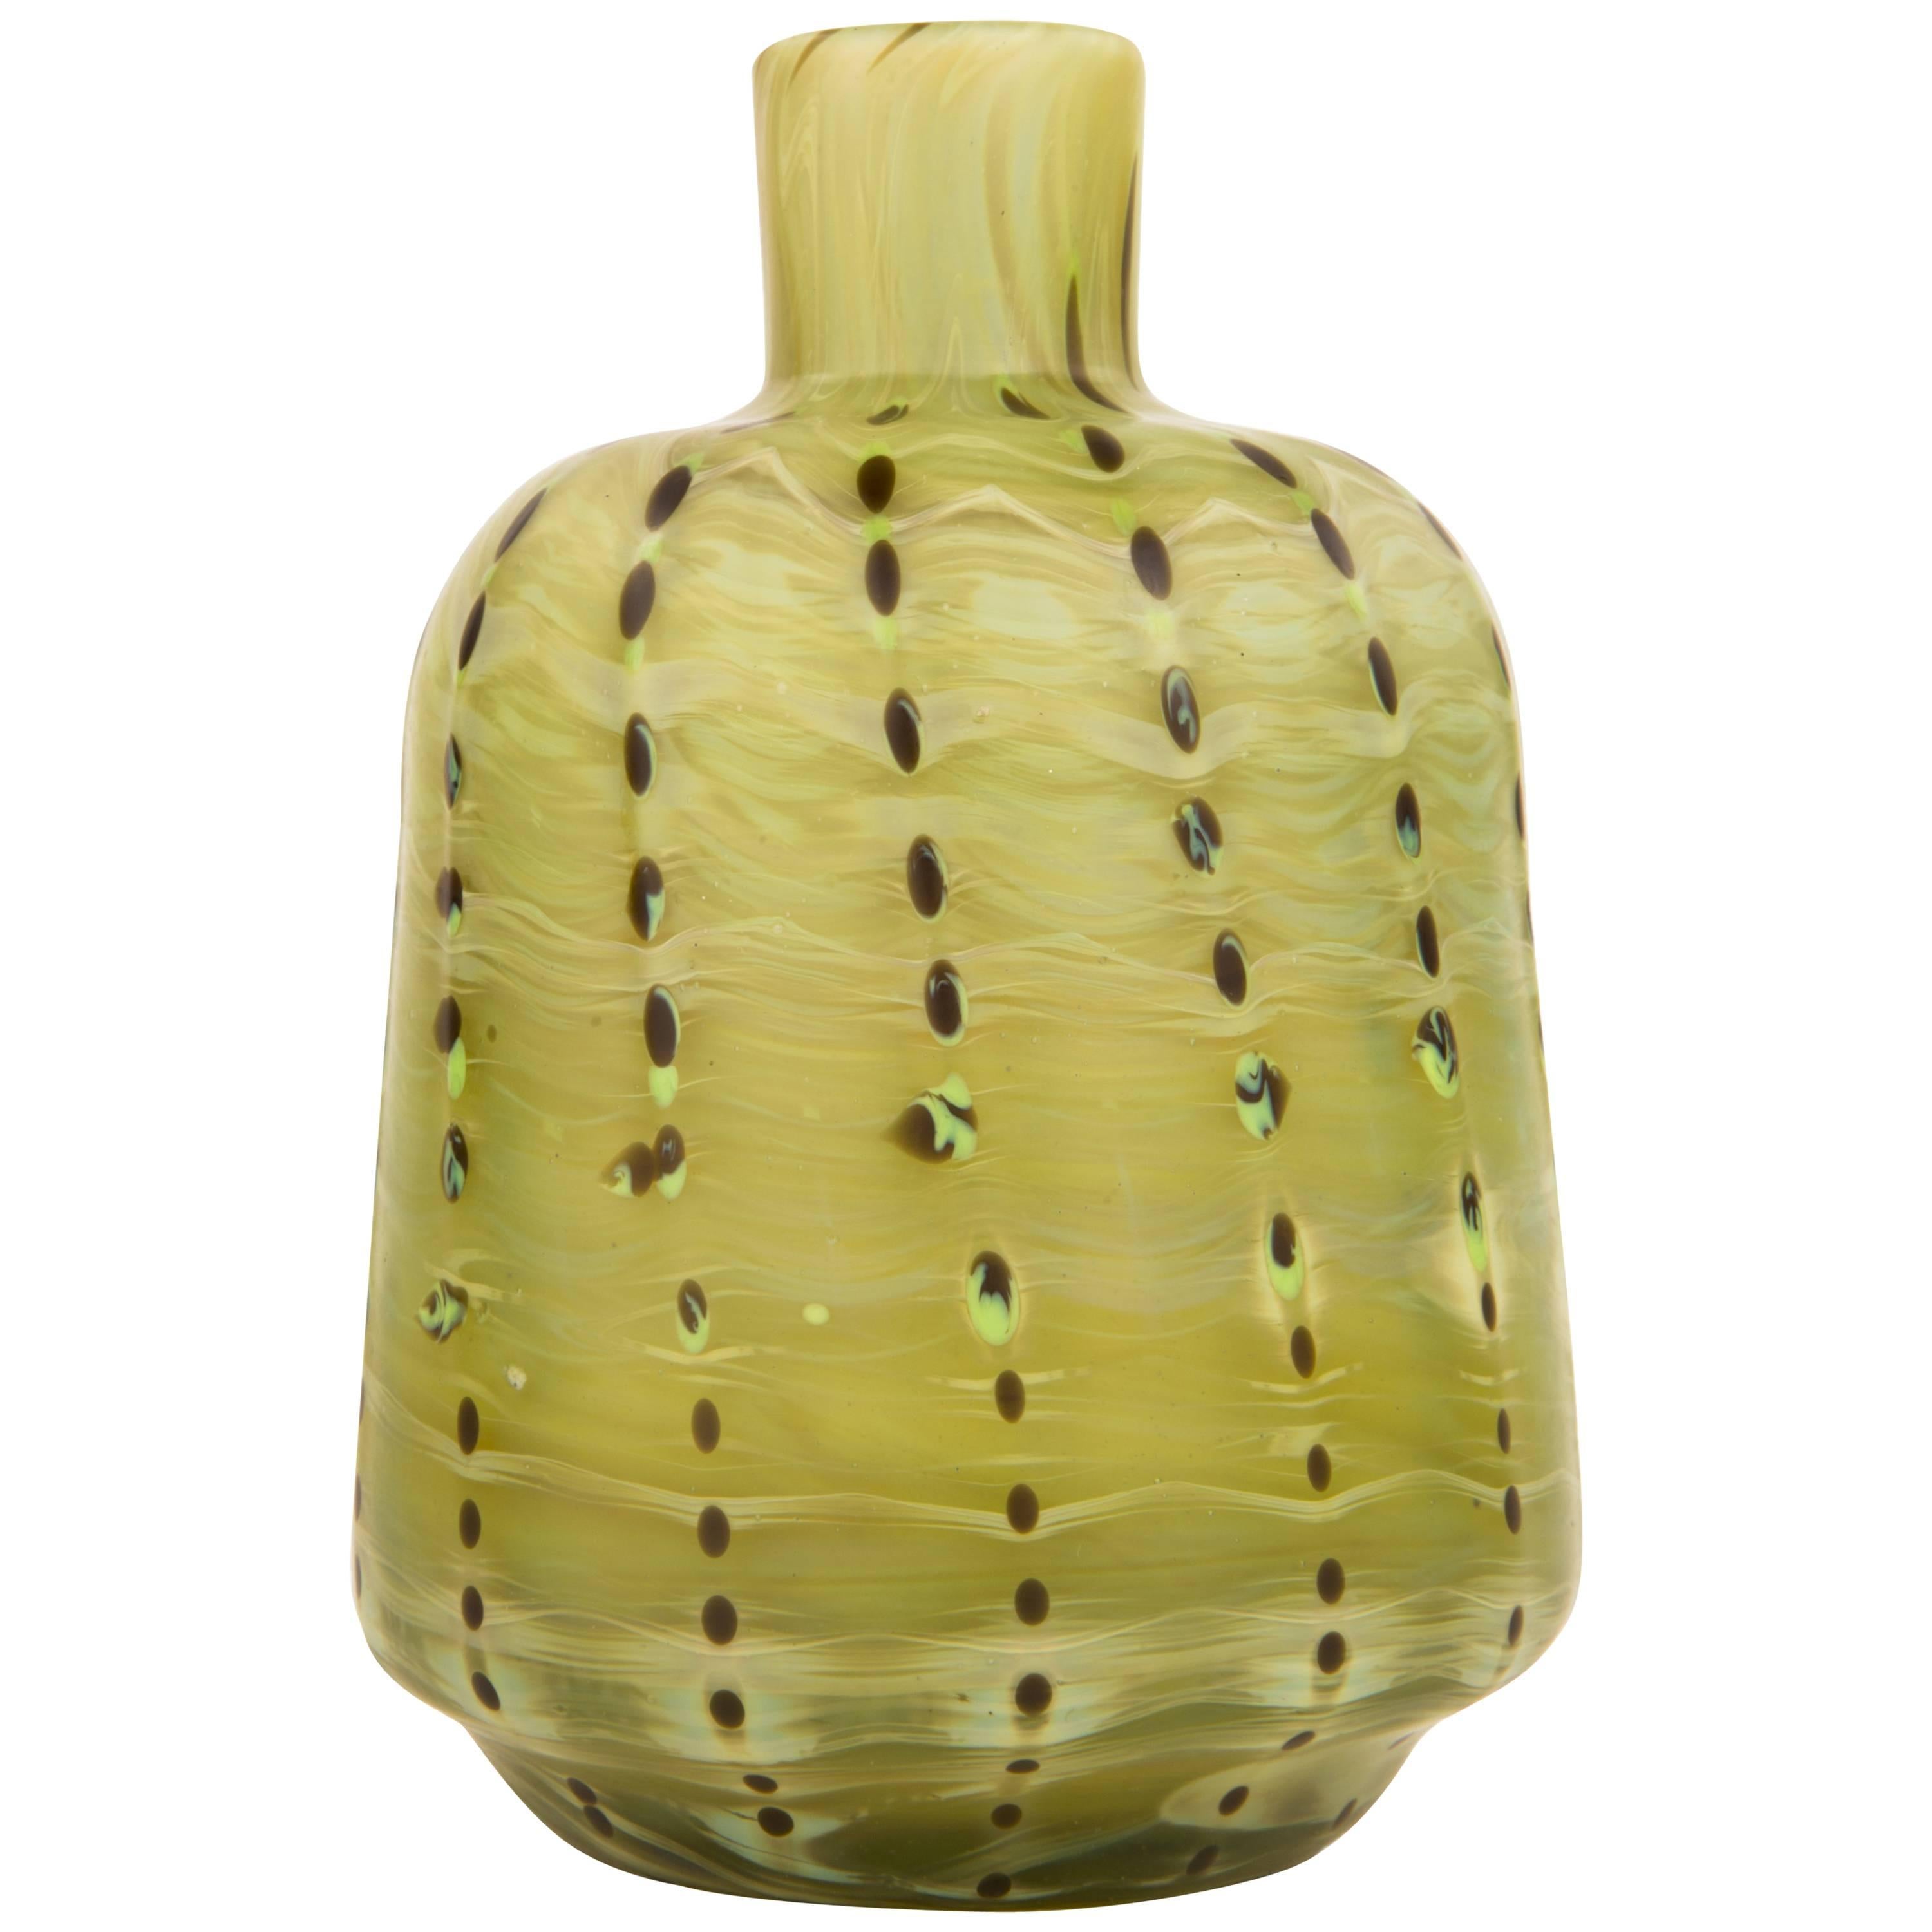 Tiffany Studios „Agate“ Favrile-Vase, Jugendstil, selten